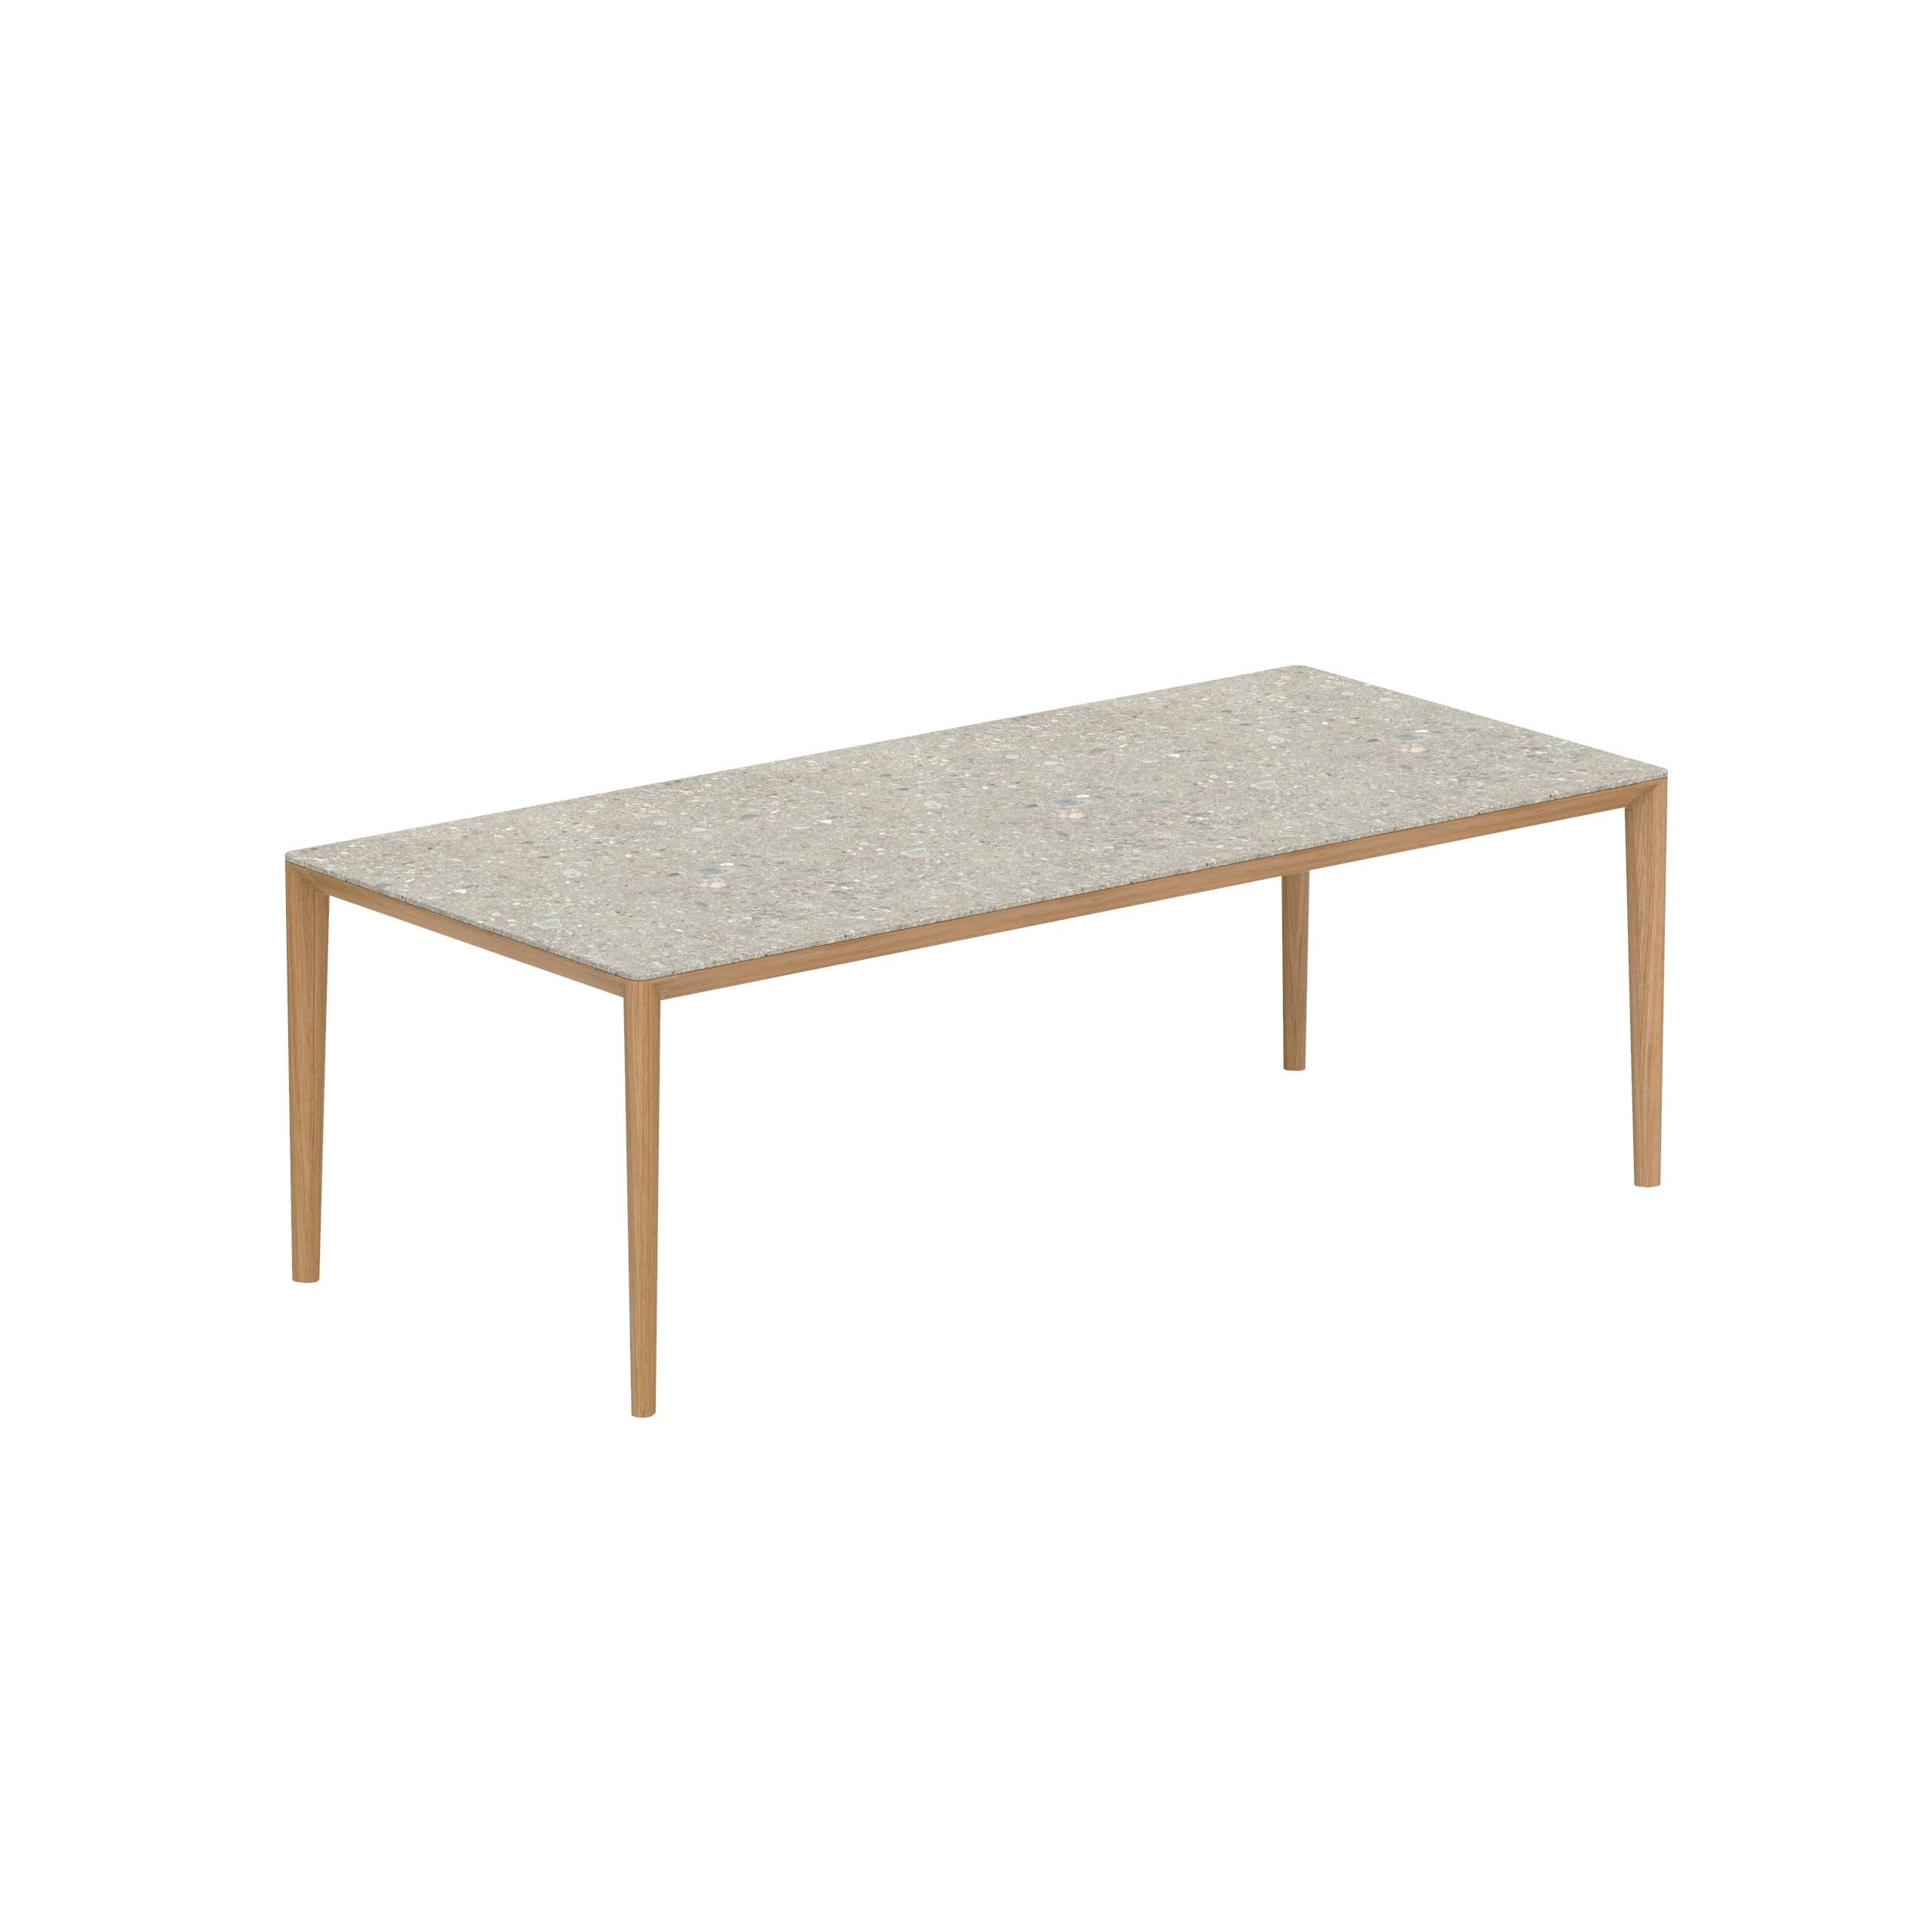 U-Nite Table 220x100cm Teak With Ceramic Tabletop In Ceppo Dolomitica